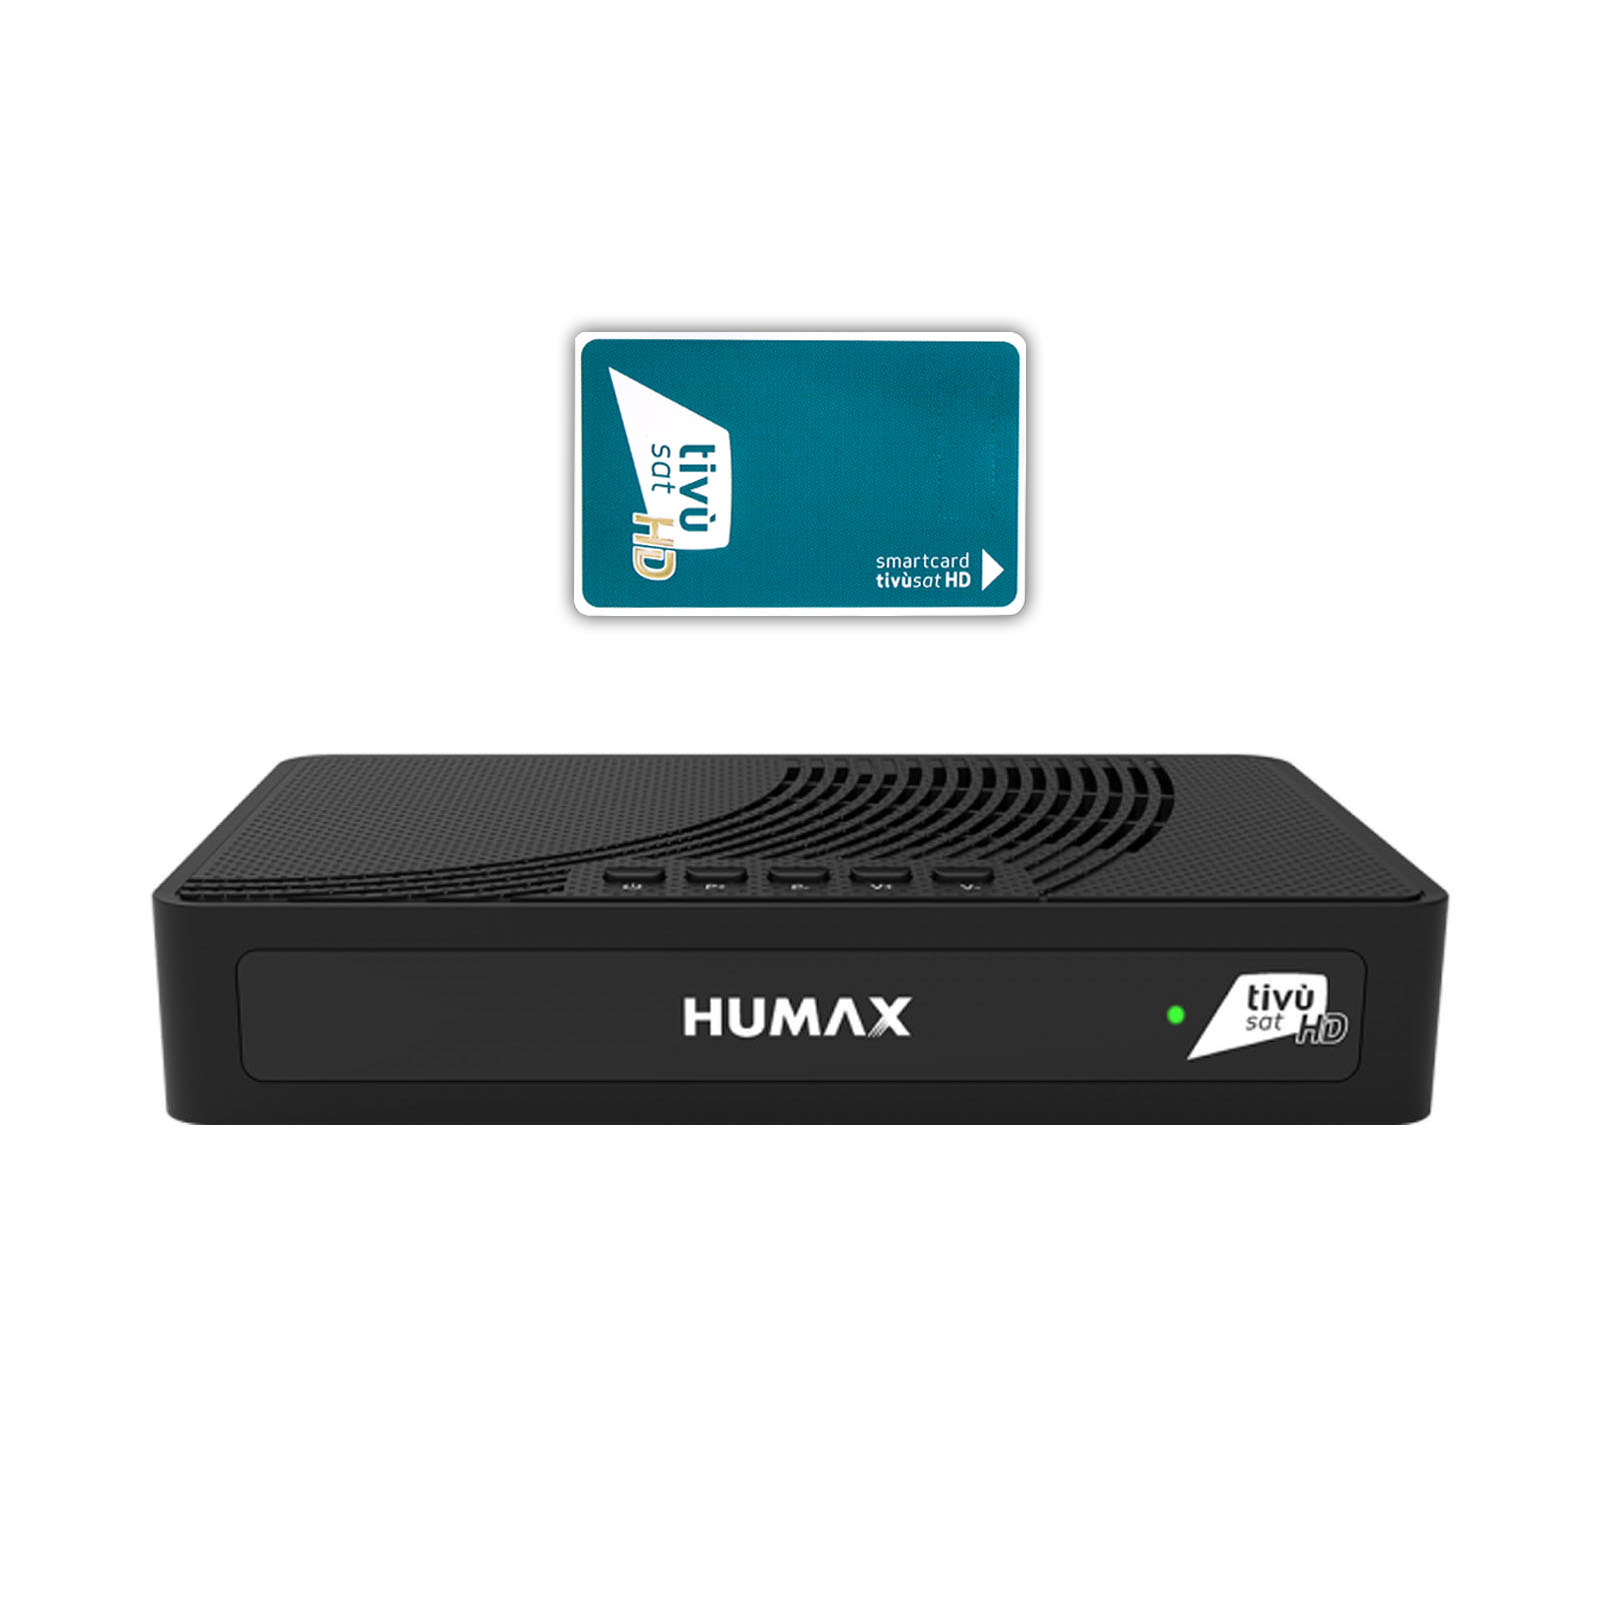 Humax TIVUMAX-HD3800S2 Satellitenreceiver inkl. Aktiviert Tivusat HD Karte